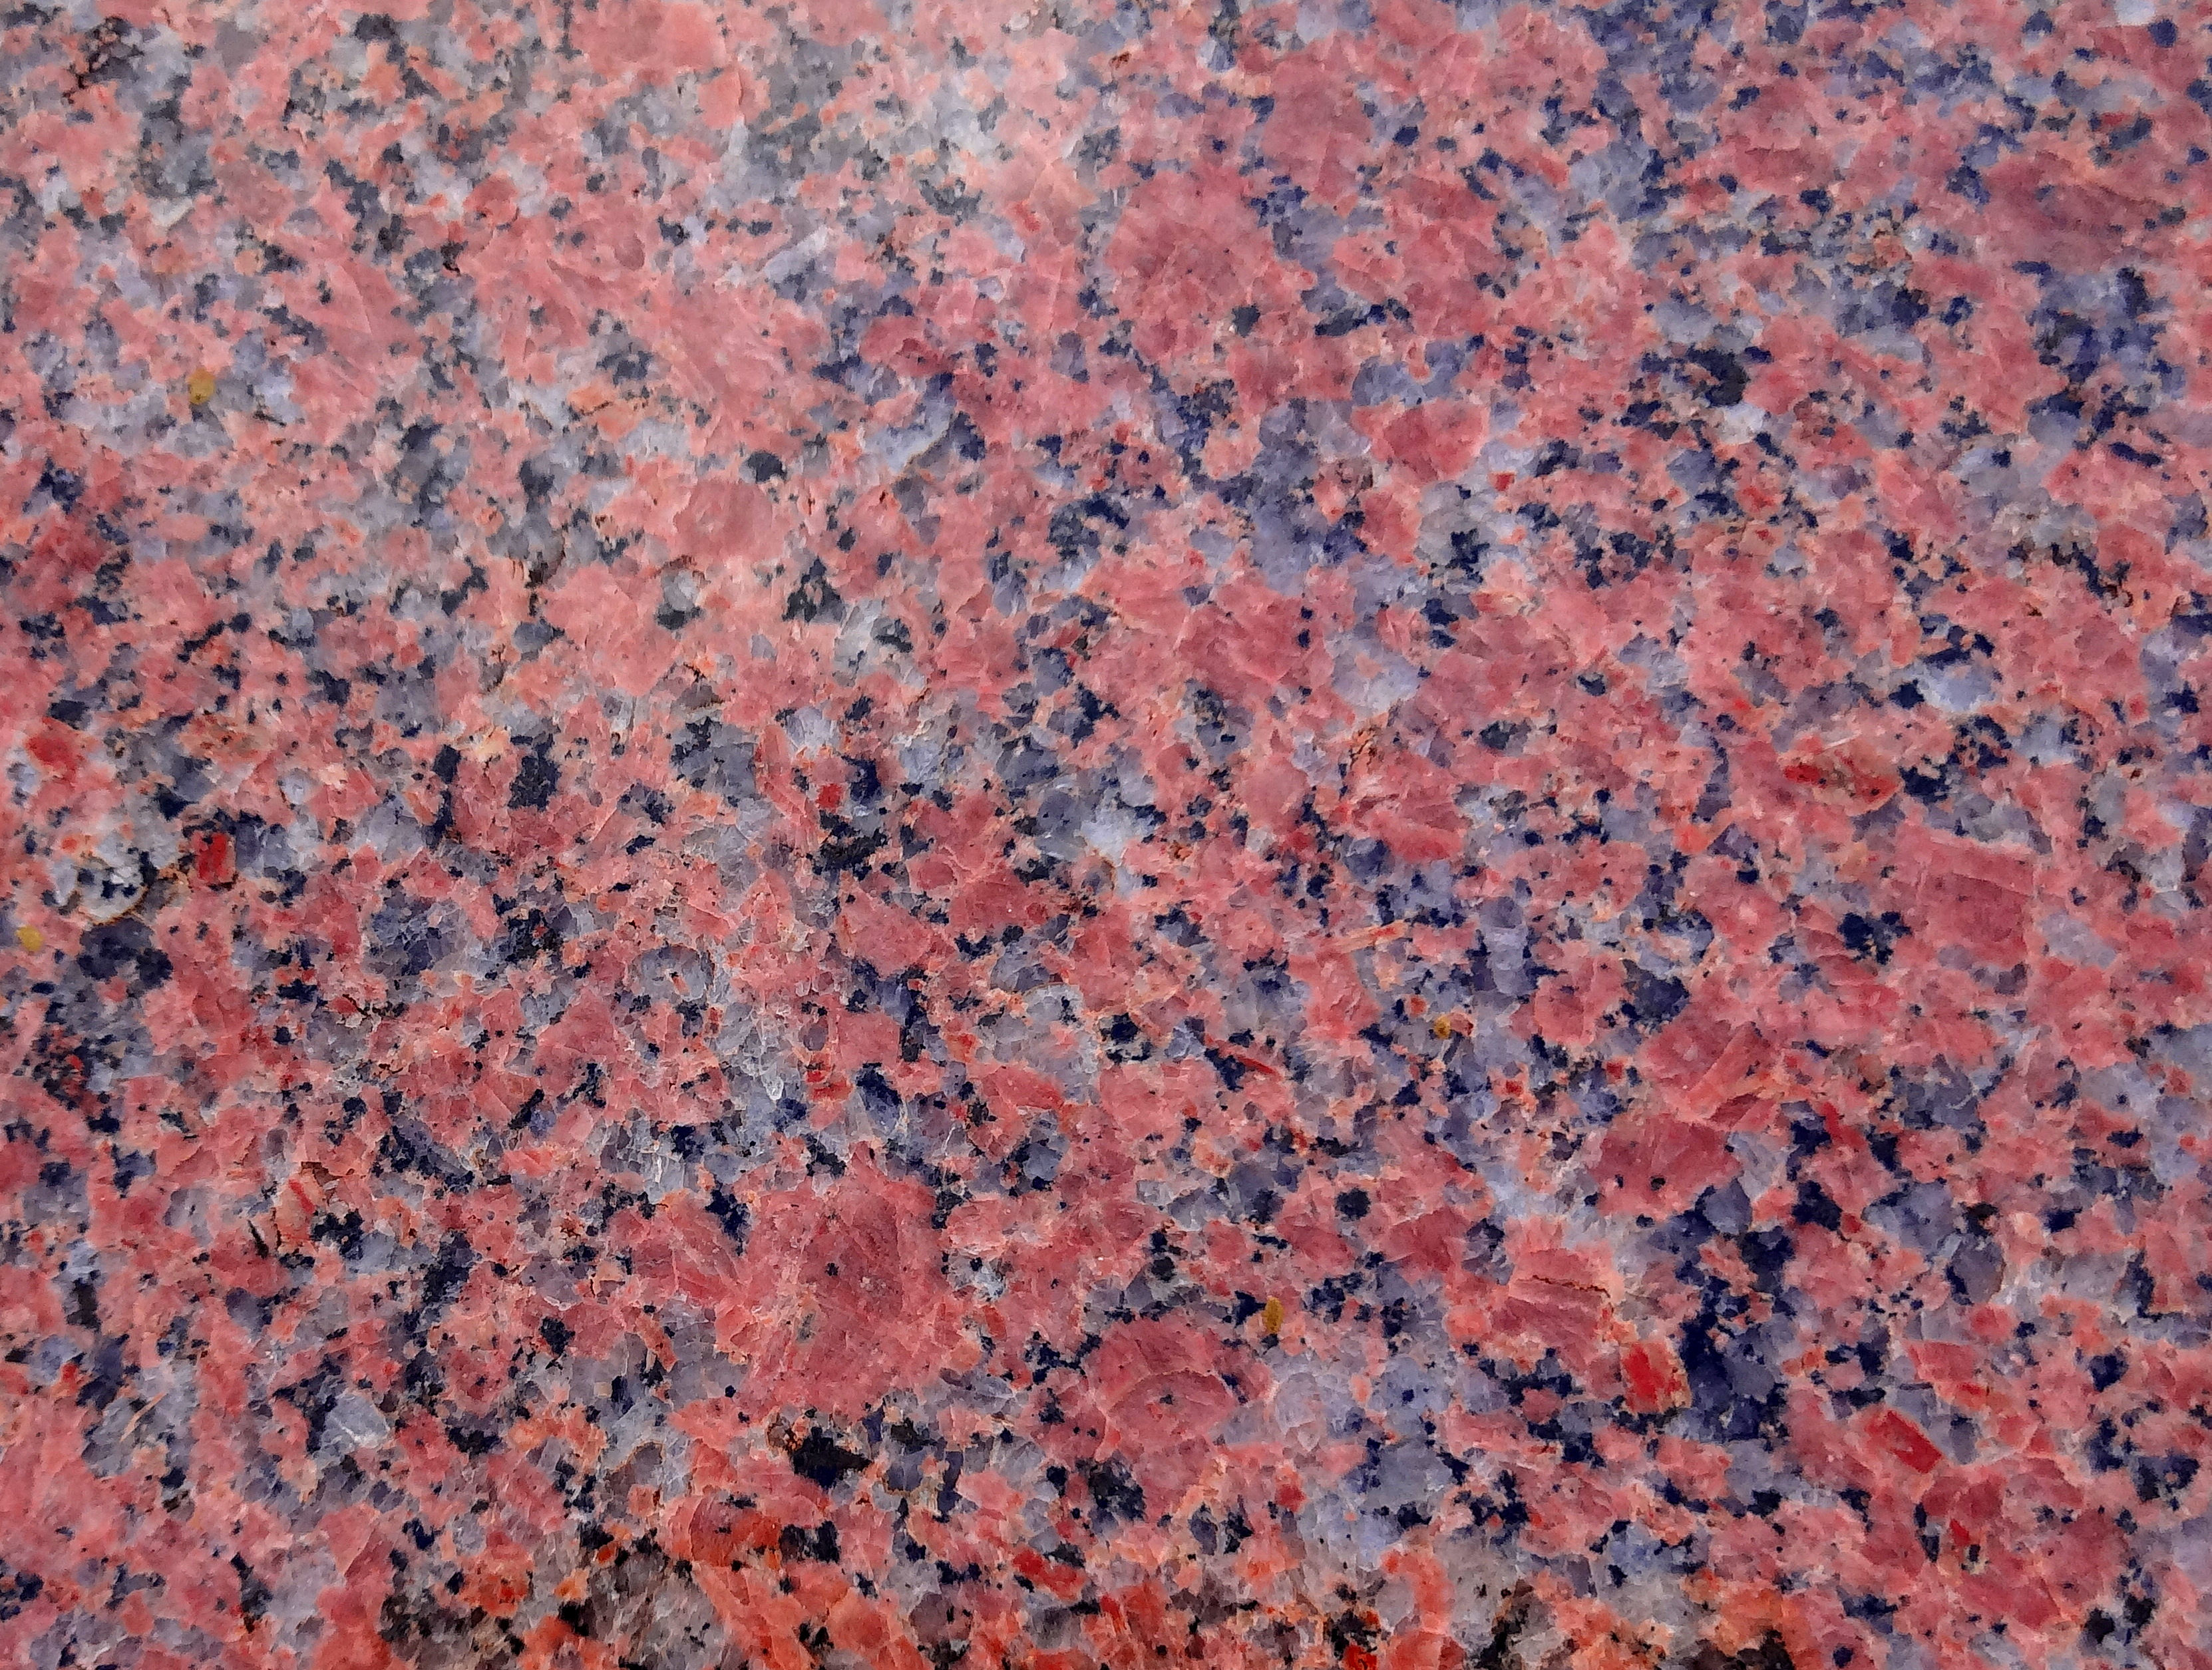 Um granito vermelho, com cristais pretos e brancos